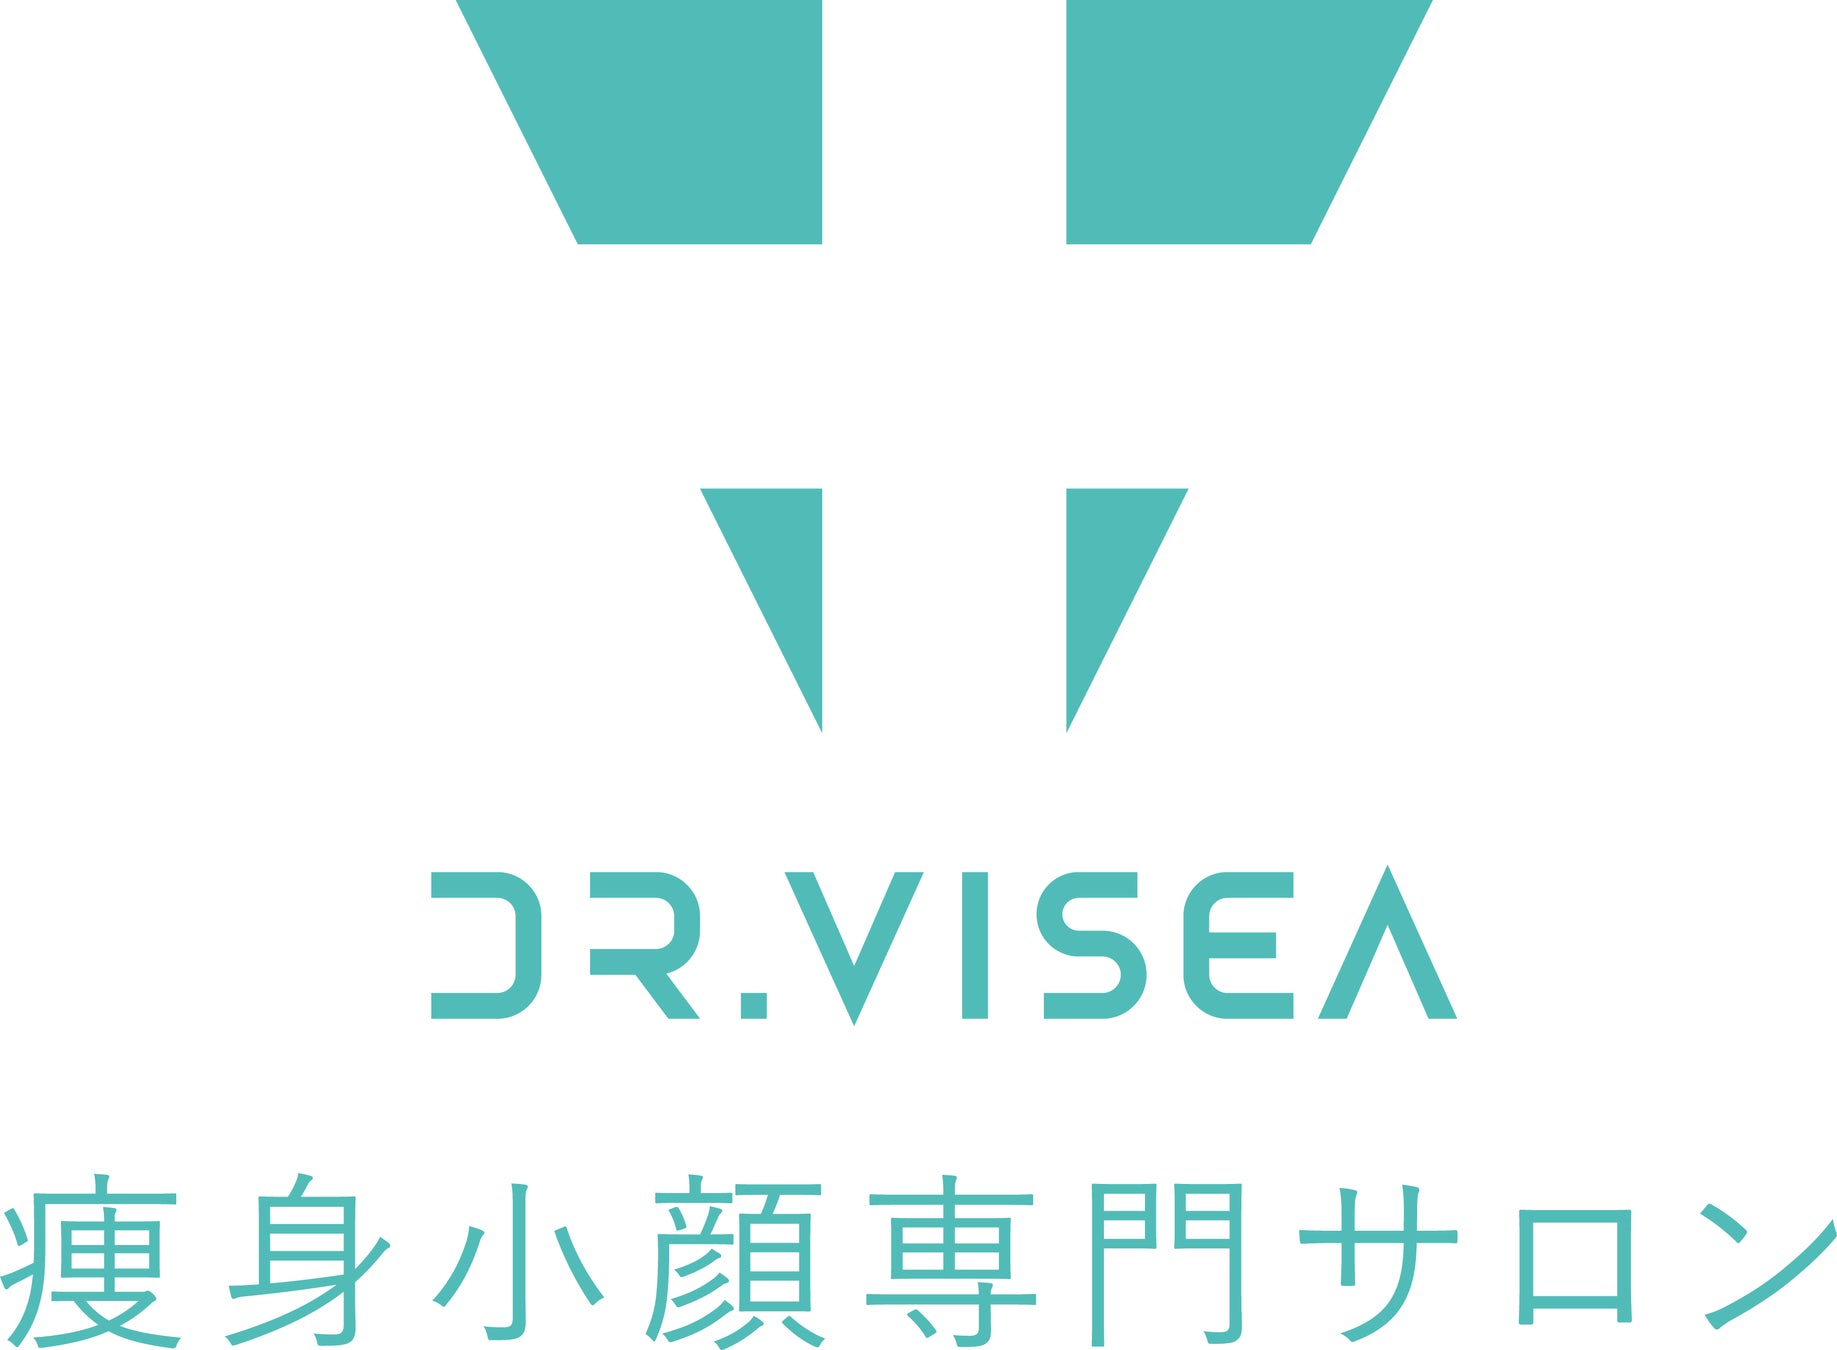 株式会社Dr.Visea直営サロン名変更と新たな取り組み